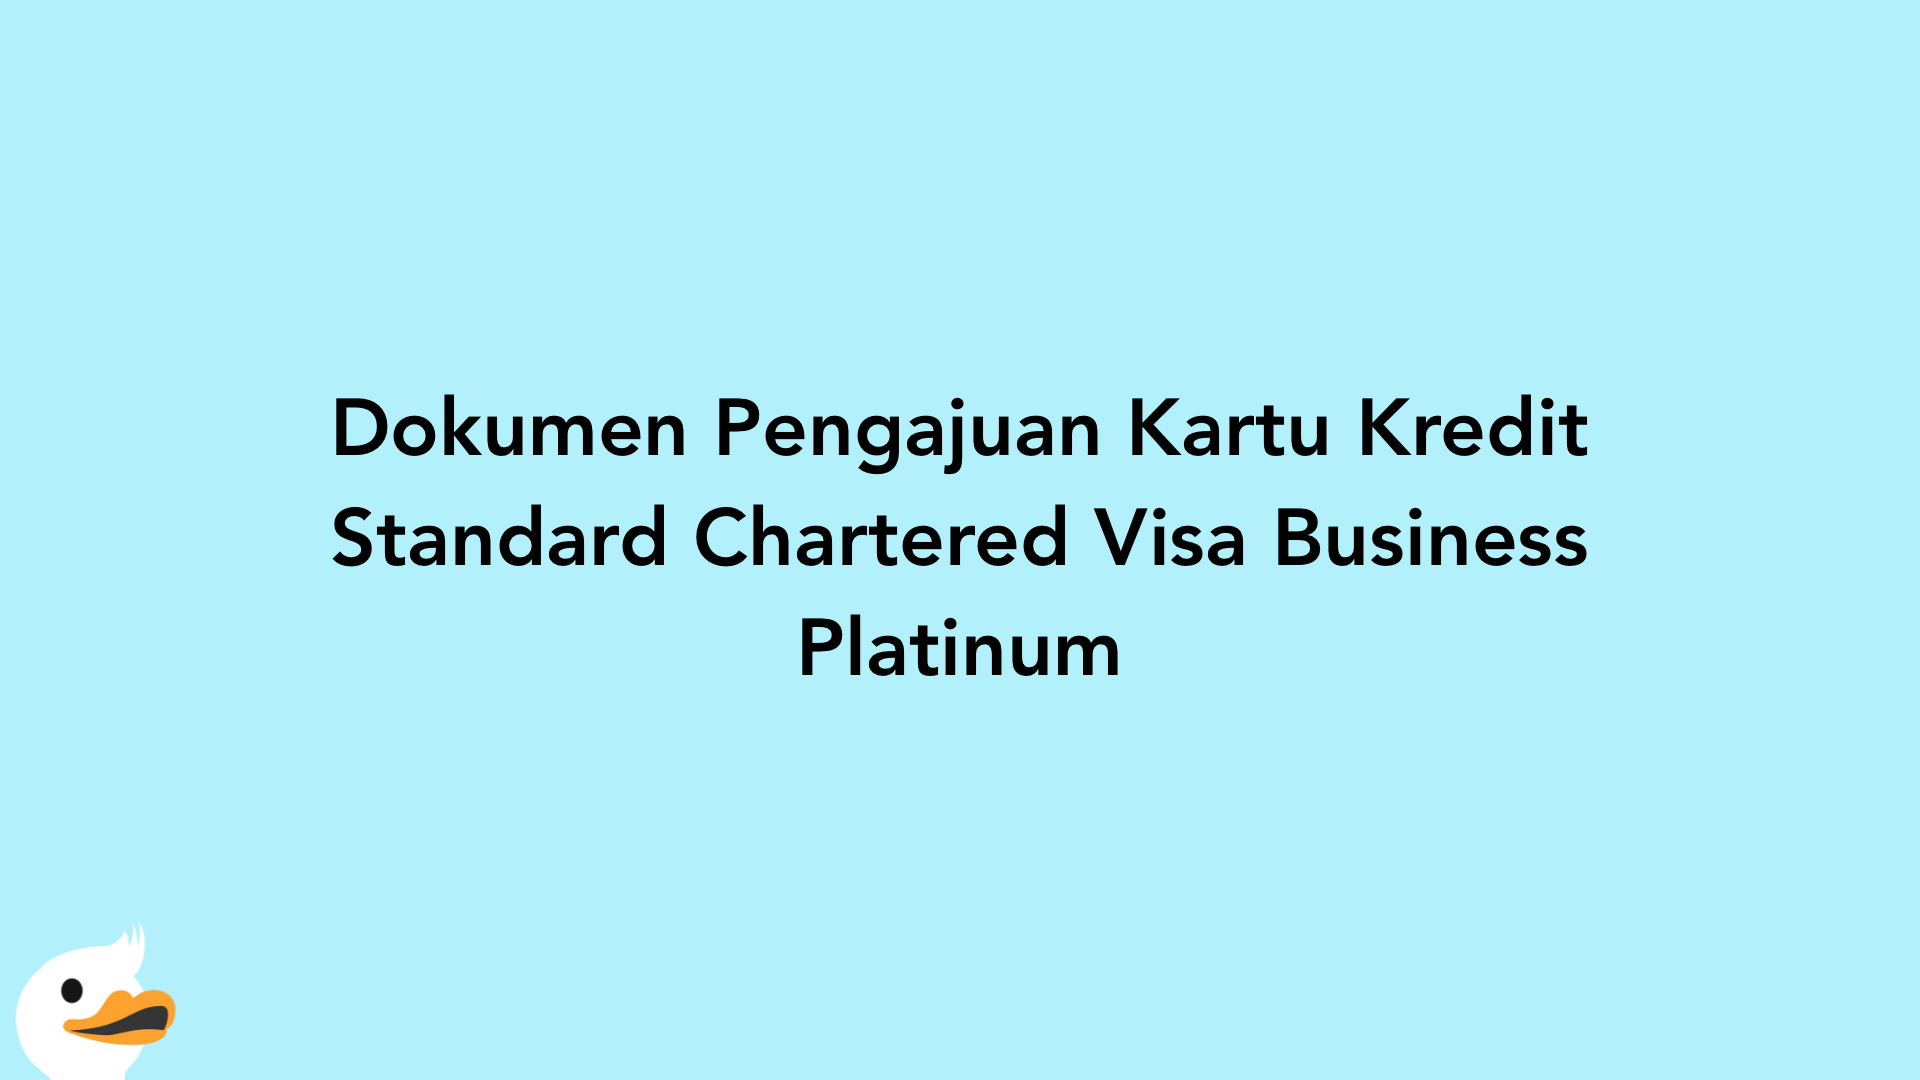 Dokumen Pengajuan Kartu Kredit Standard Chartered Visa Business Platinum